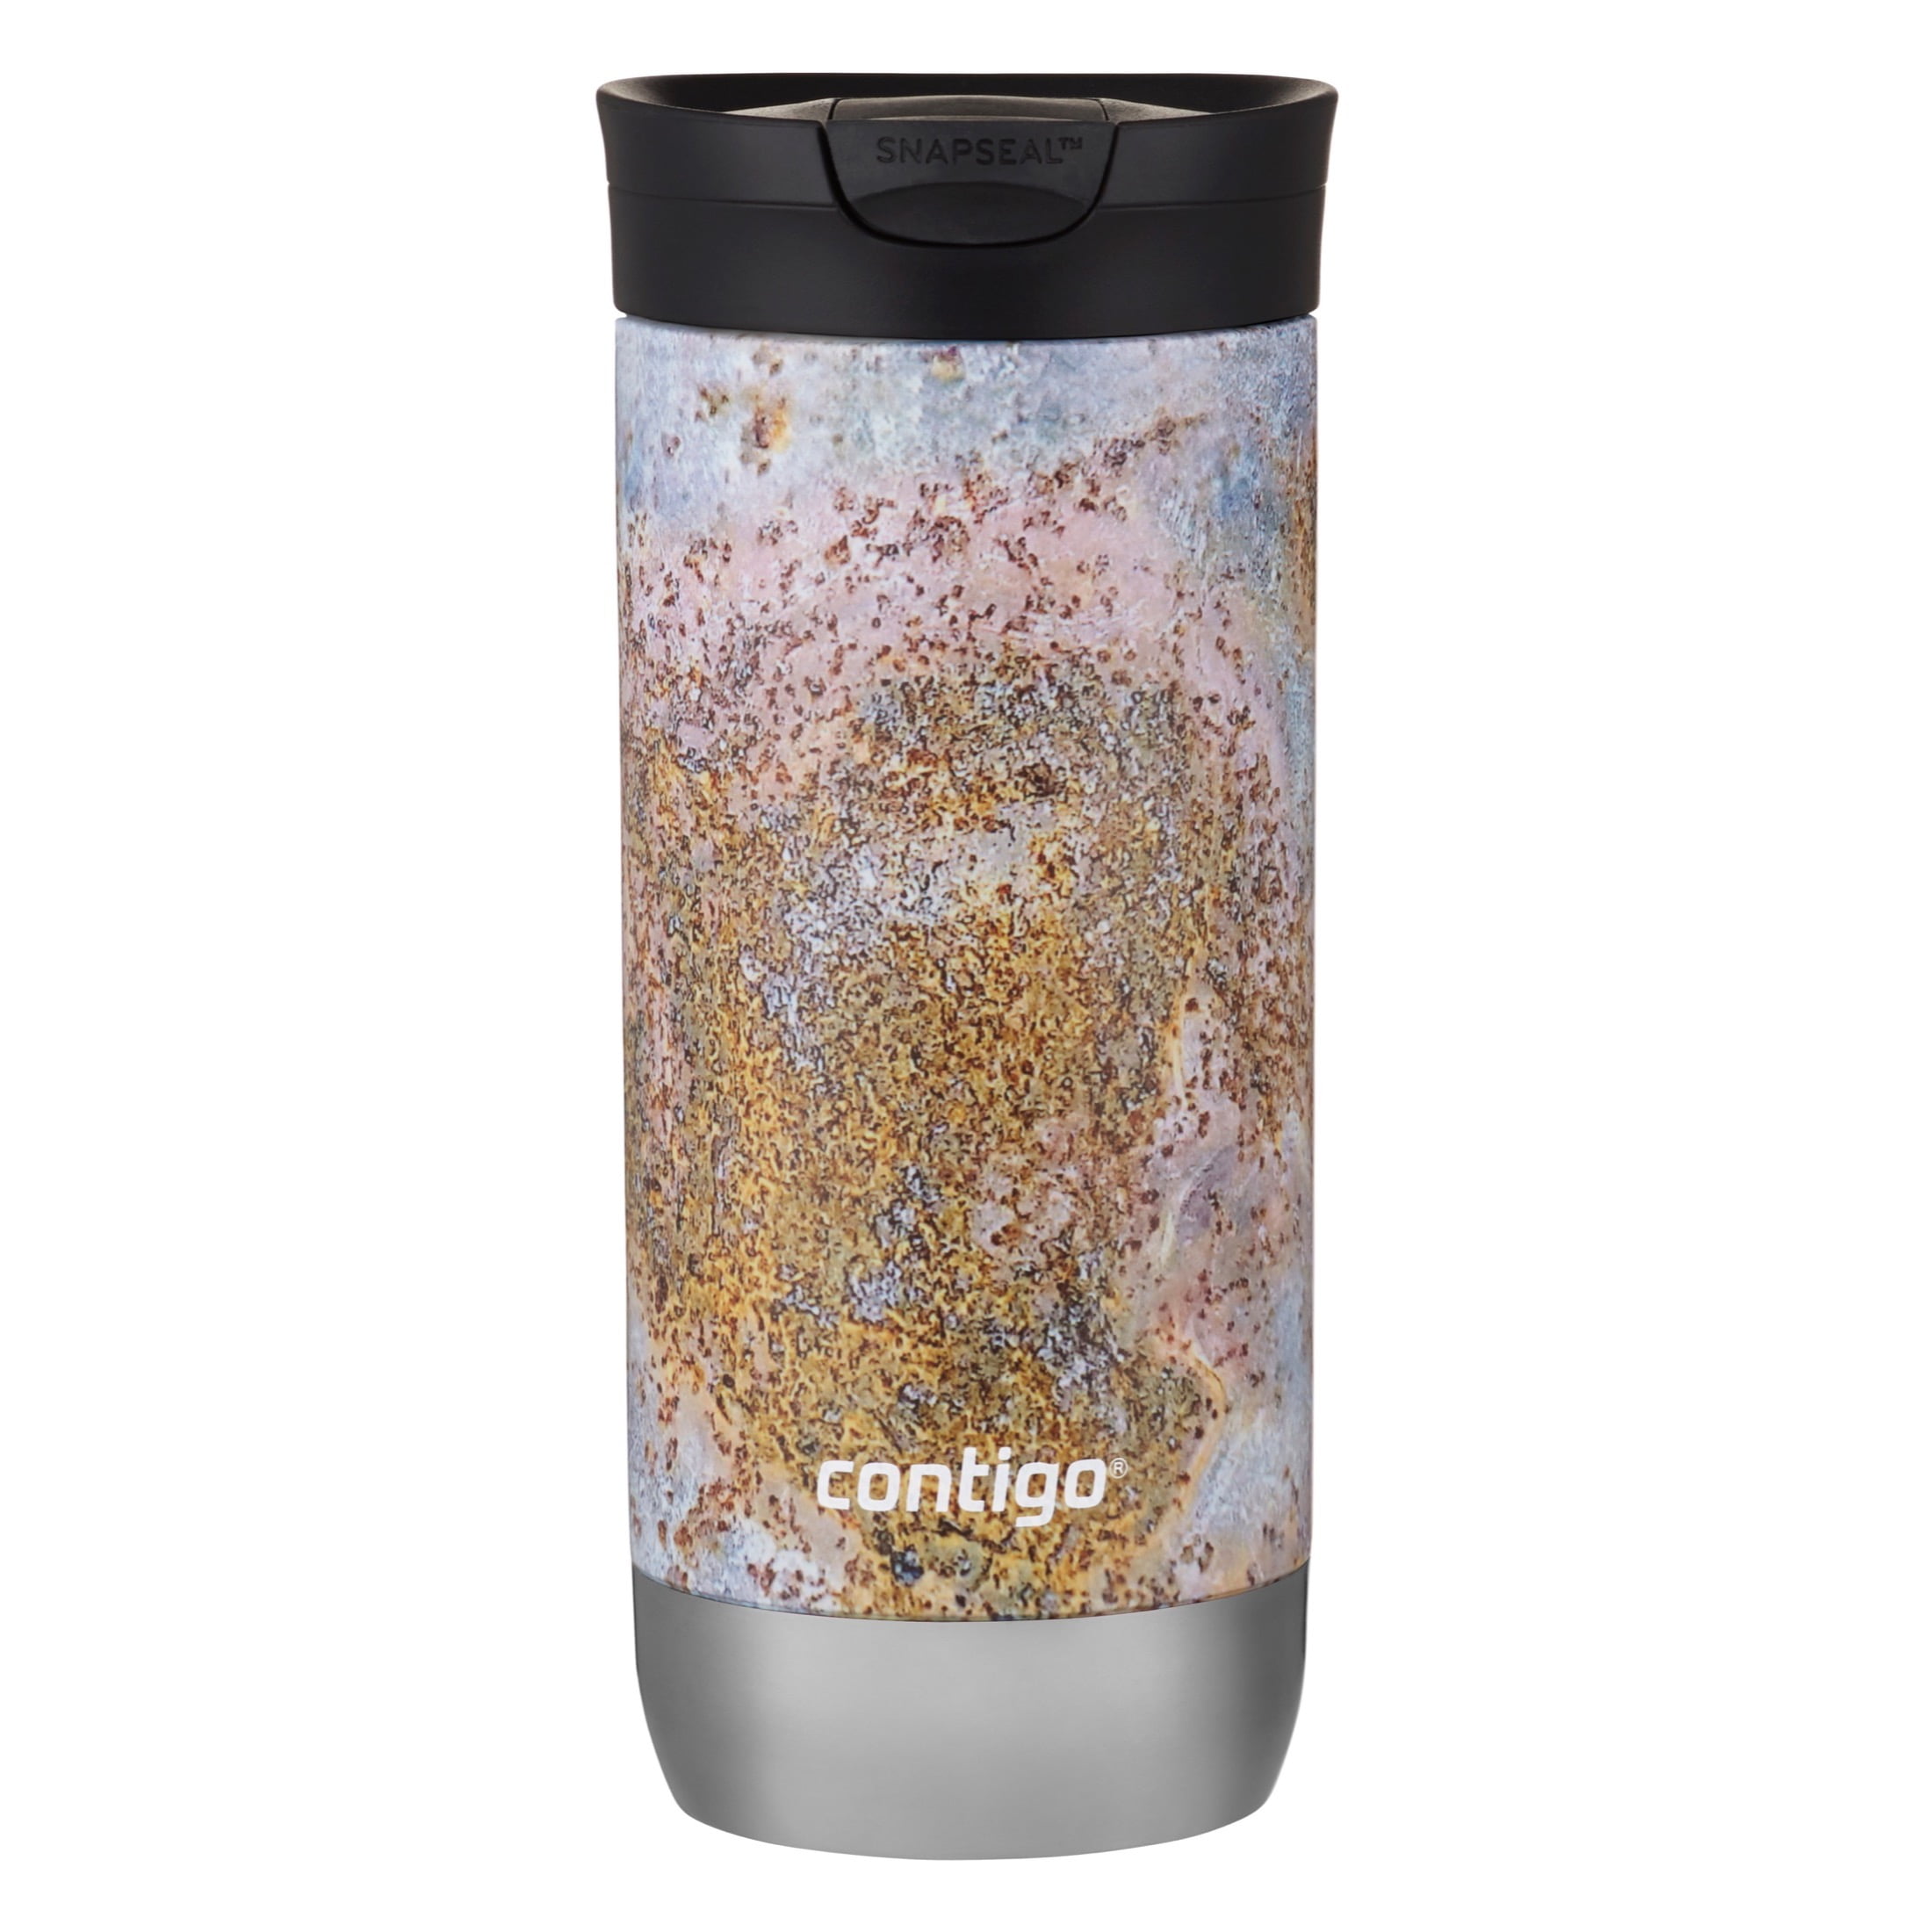 Contigo Huron Travel Mug Review; Keeps Coffee Hot for 4 Hours